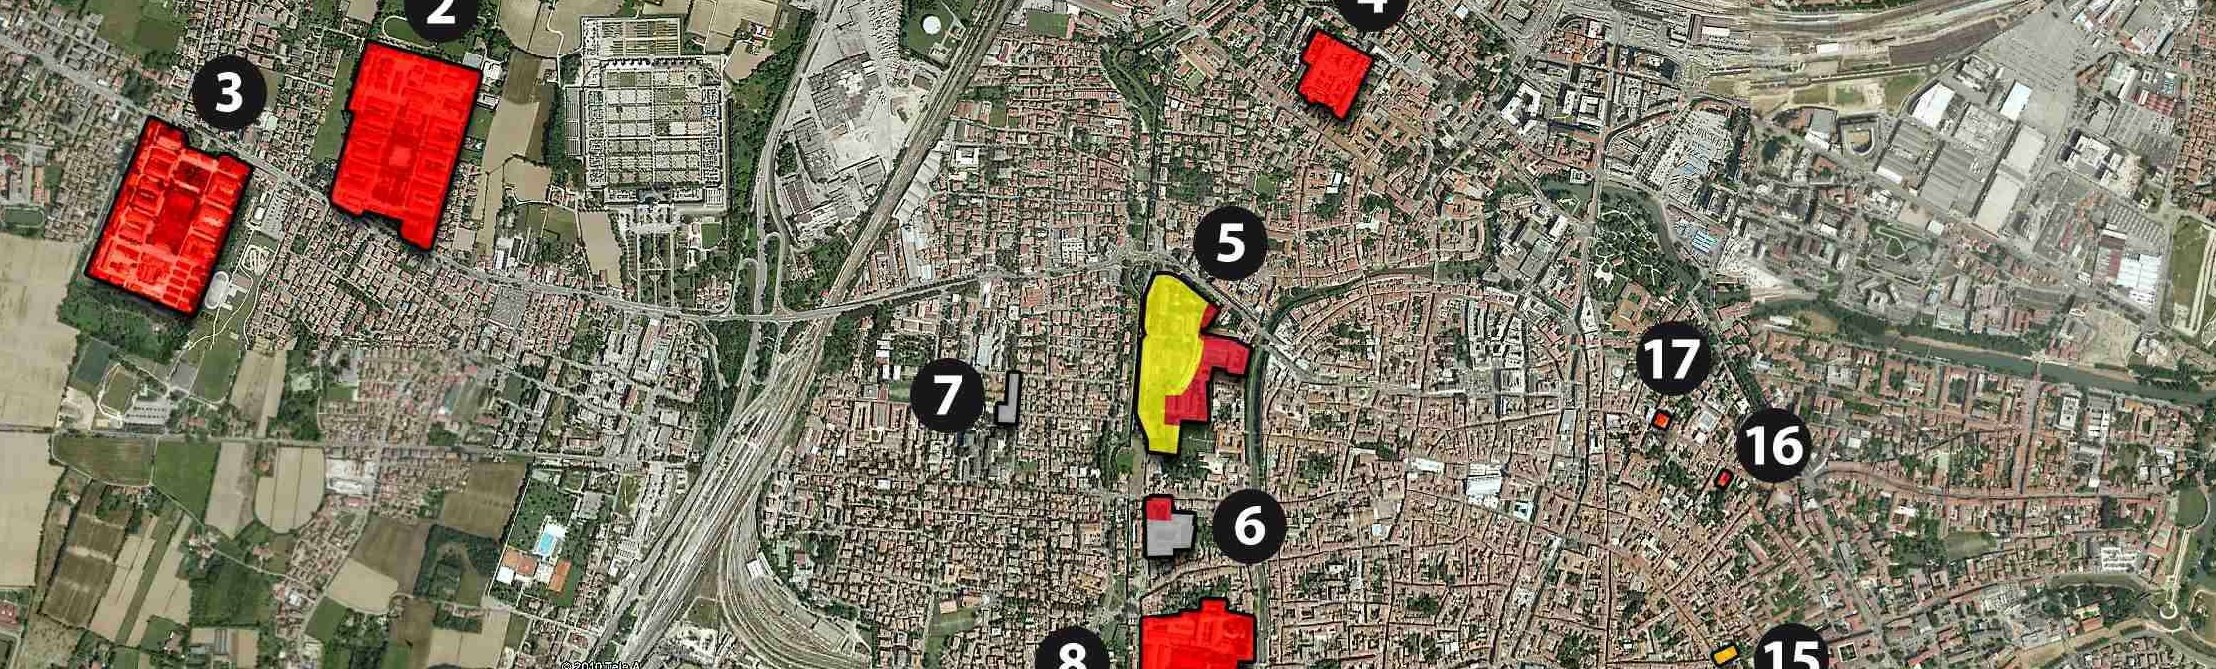 Stralcio della città di Padova con aree militari